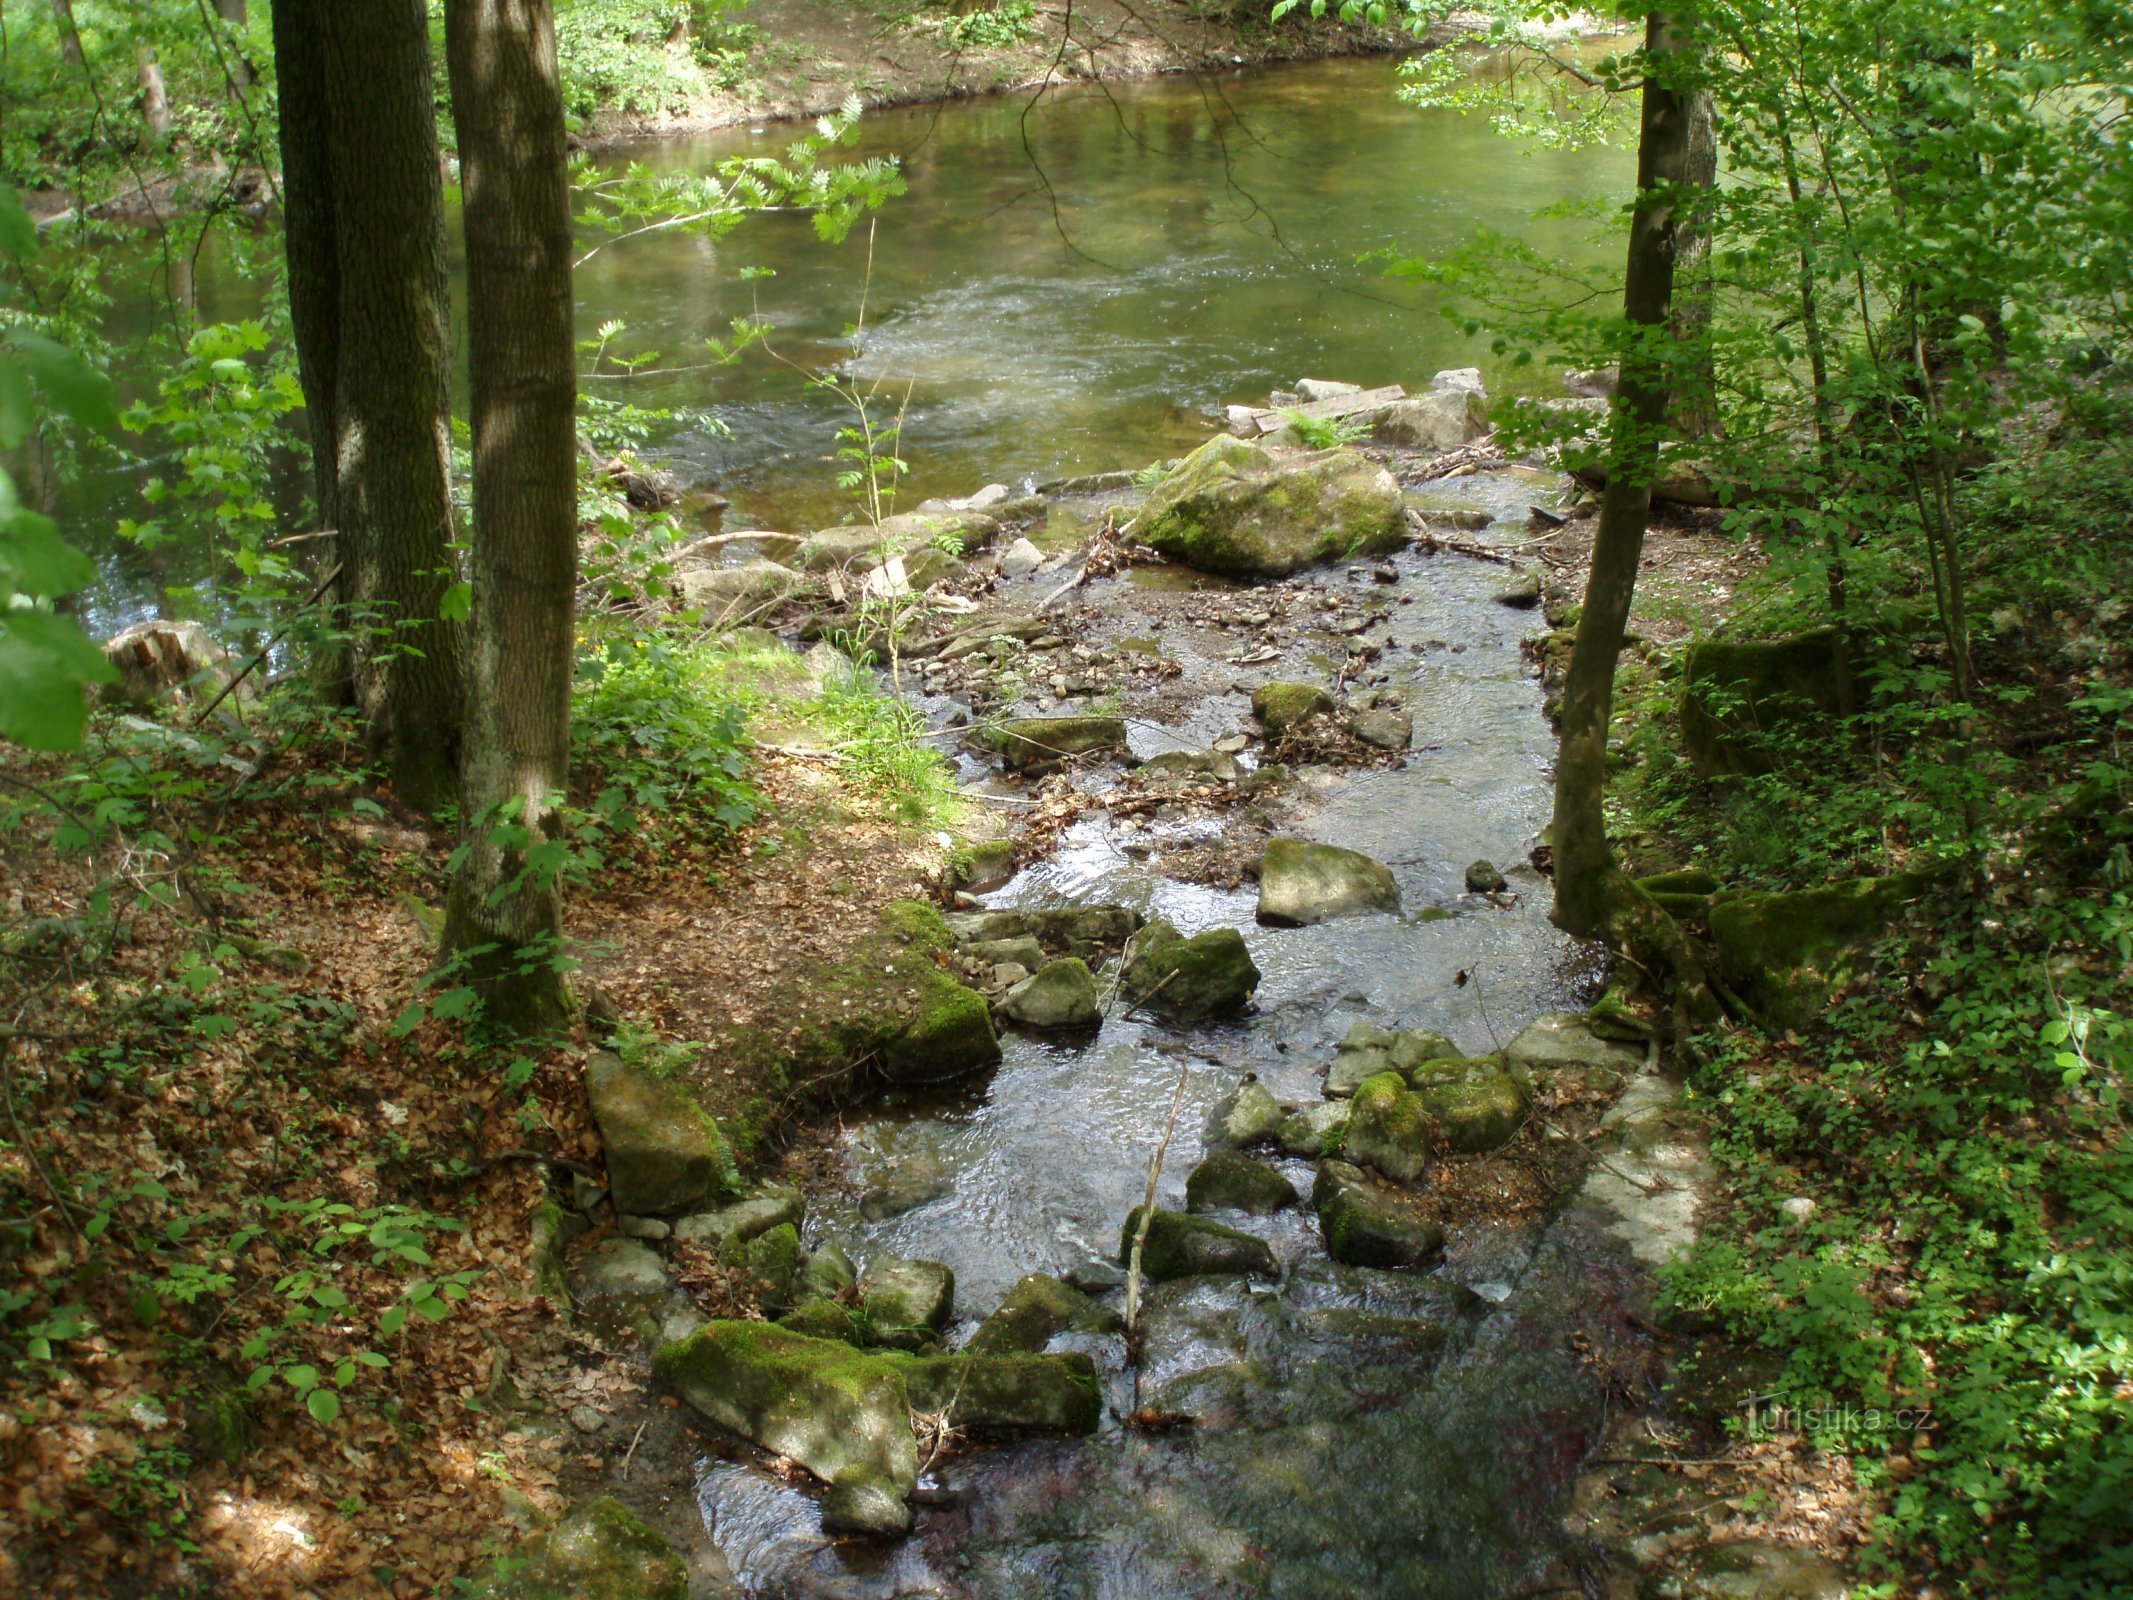 Slatina 溪流和 Úpa (Slatina nad Úpou) 的交汇处